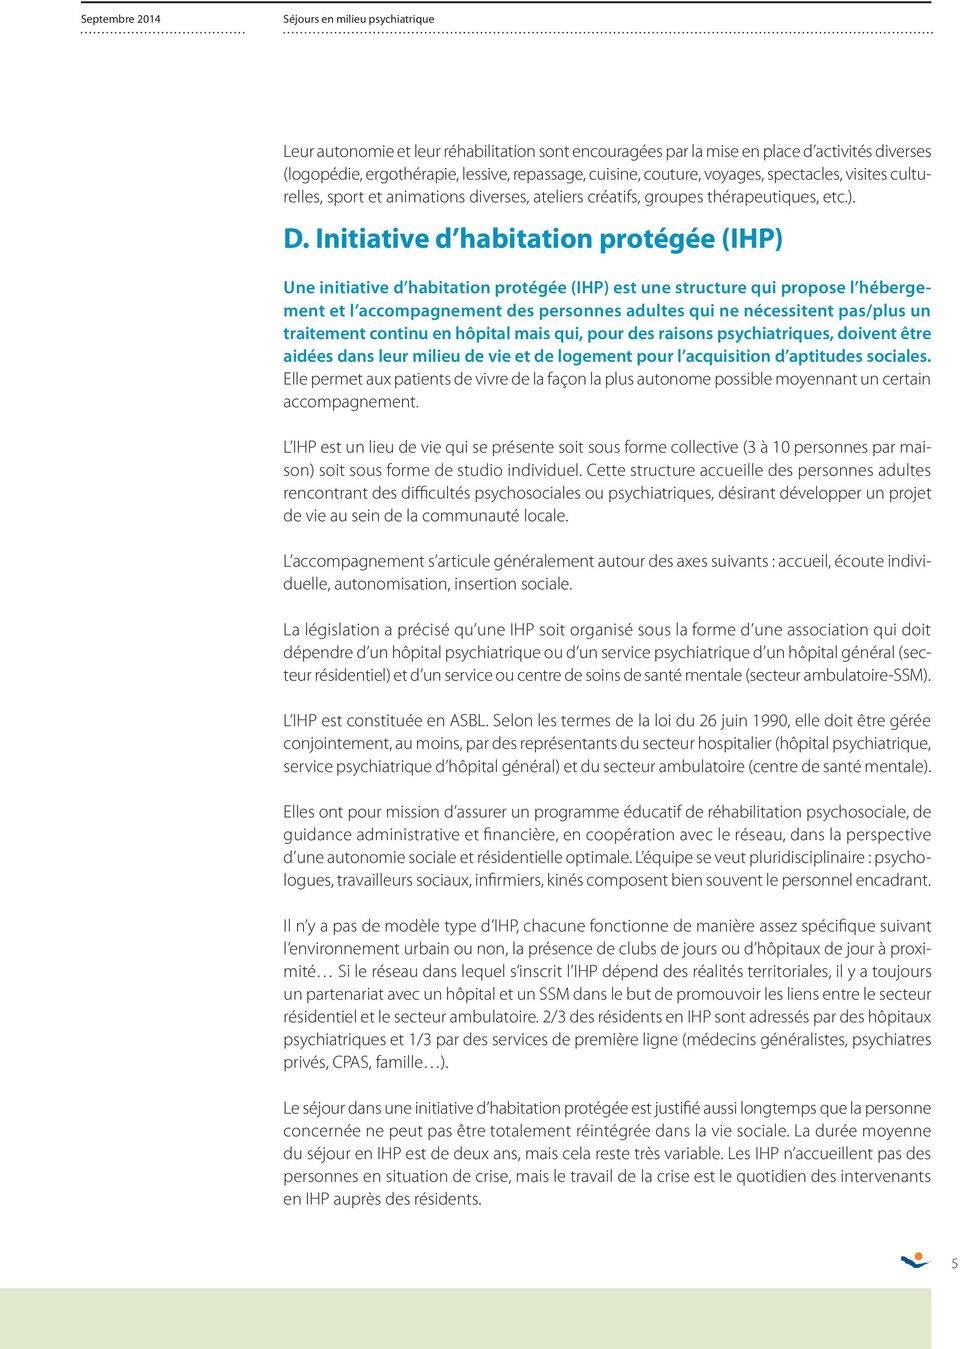 Initiative d habitation protégée (IHP) Une initiative d habitation protégée (IHP) est une structure qui propose l hébergement et l accompagnement des personnes adultes qui ne nécessitent pas/plus un